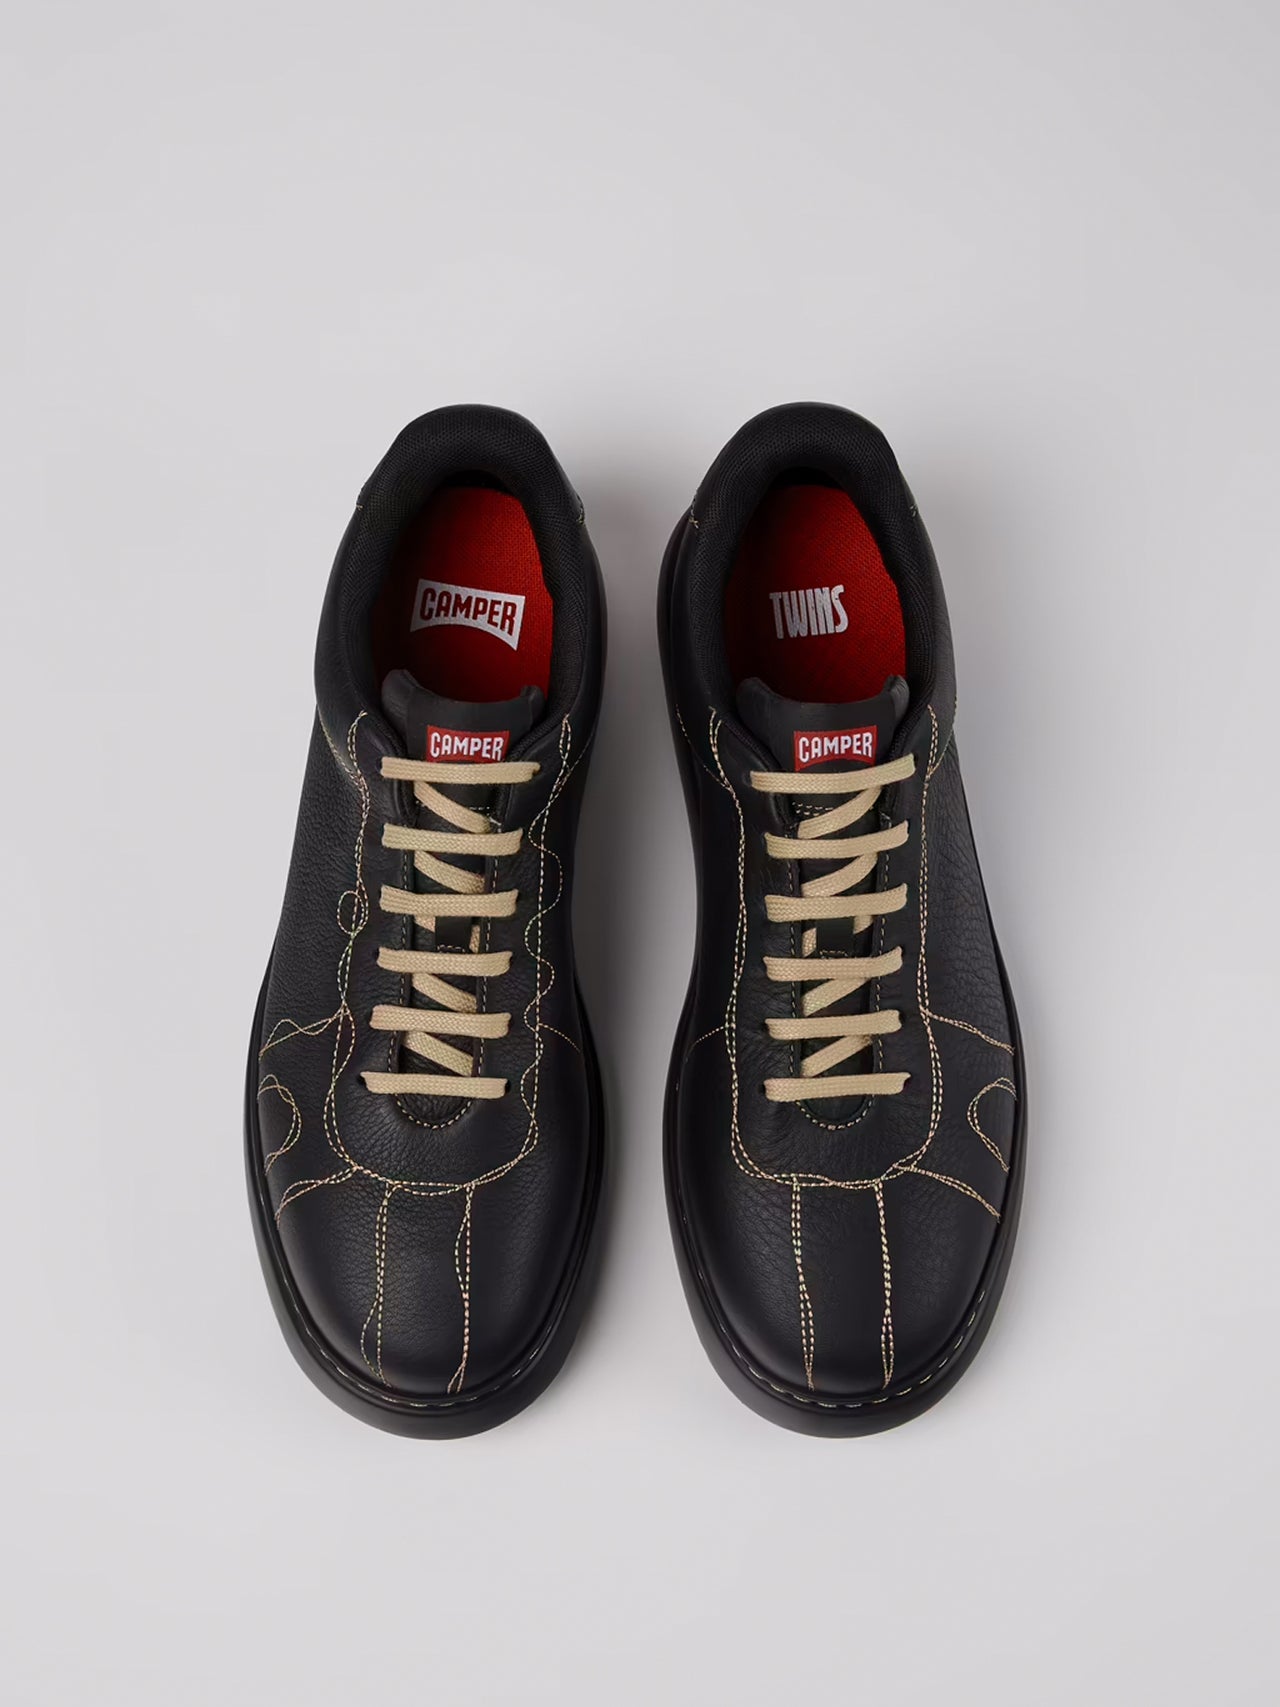 CAMPER / Twins Sneakers (BLACK)